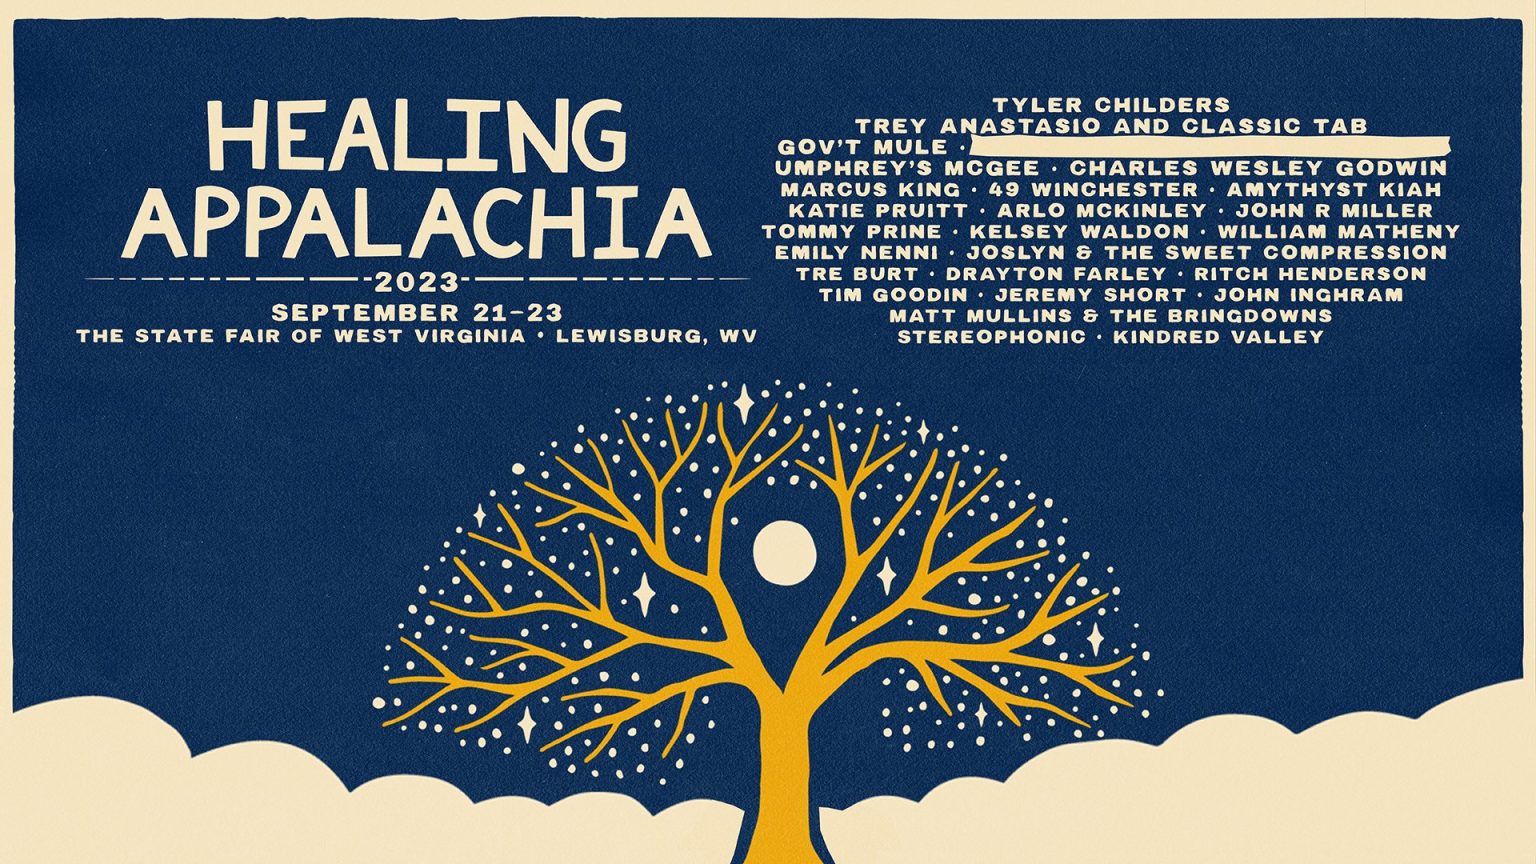 Healing Appalachia Lineup Announced Hashtag West Virginia Art